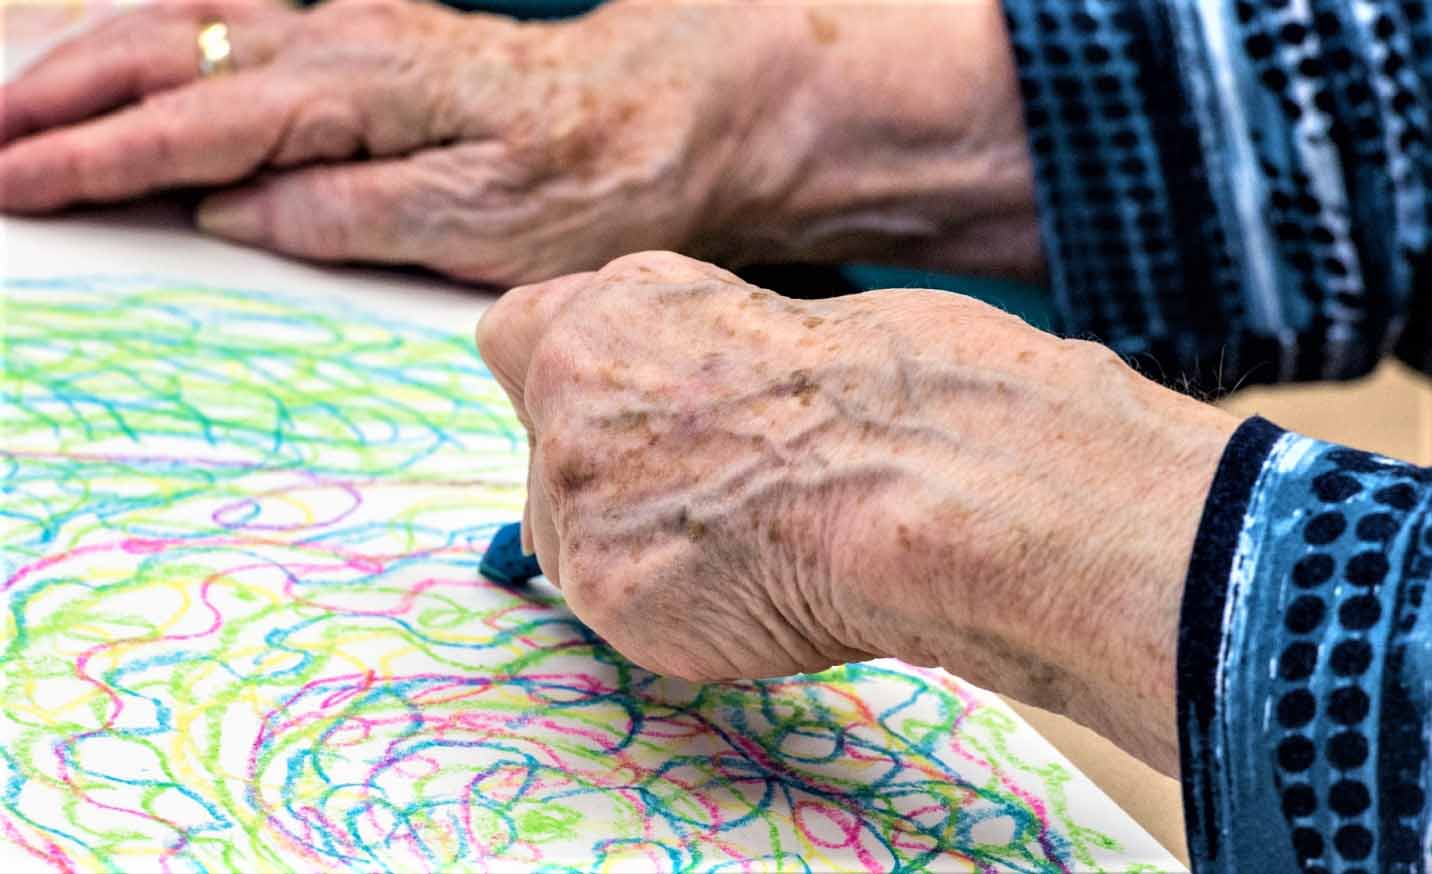 Ответы к тестам НМО: "Арт-терапия болезни Альцгеймера"